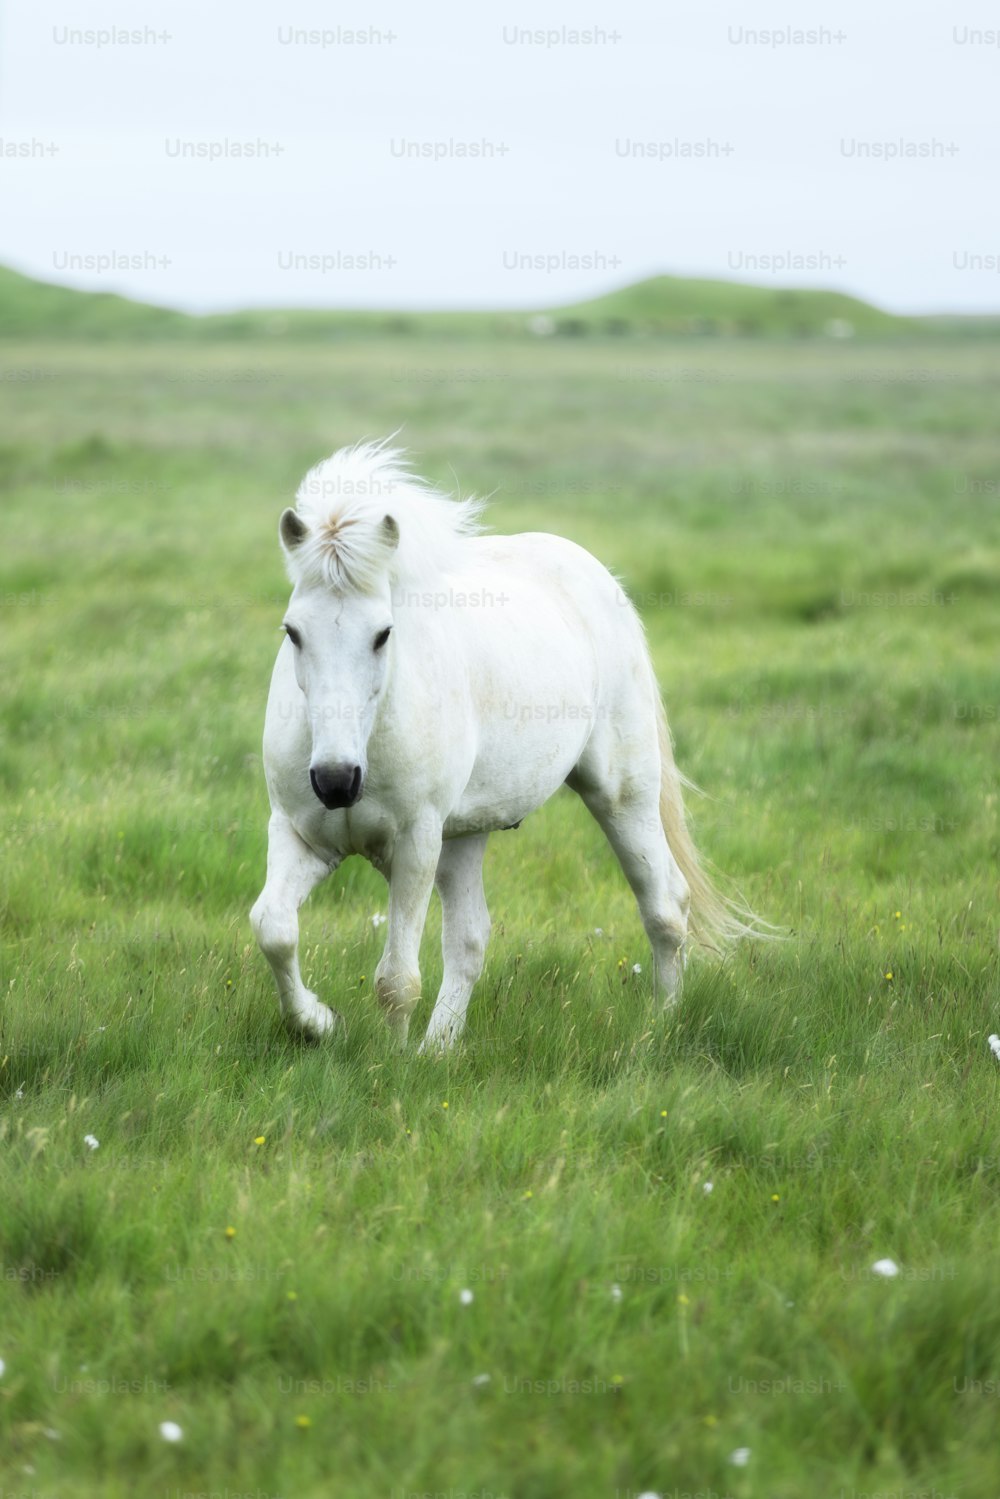 Un cheval blanc se tient debout dans un champ herbeux